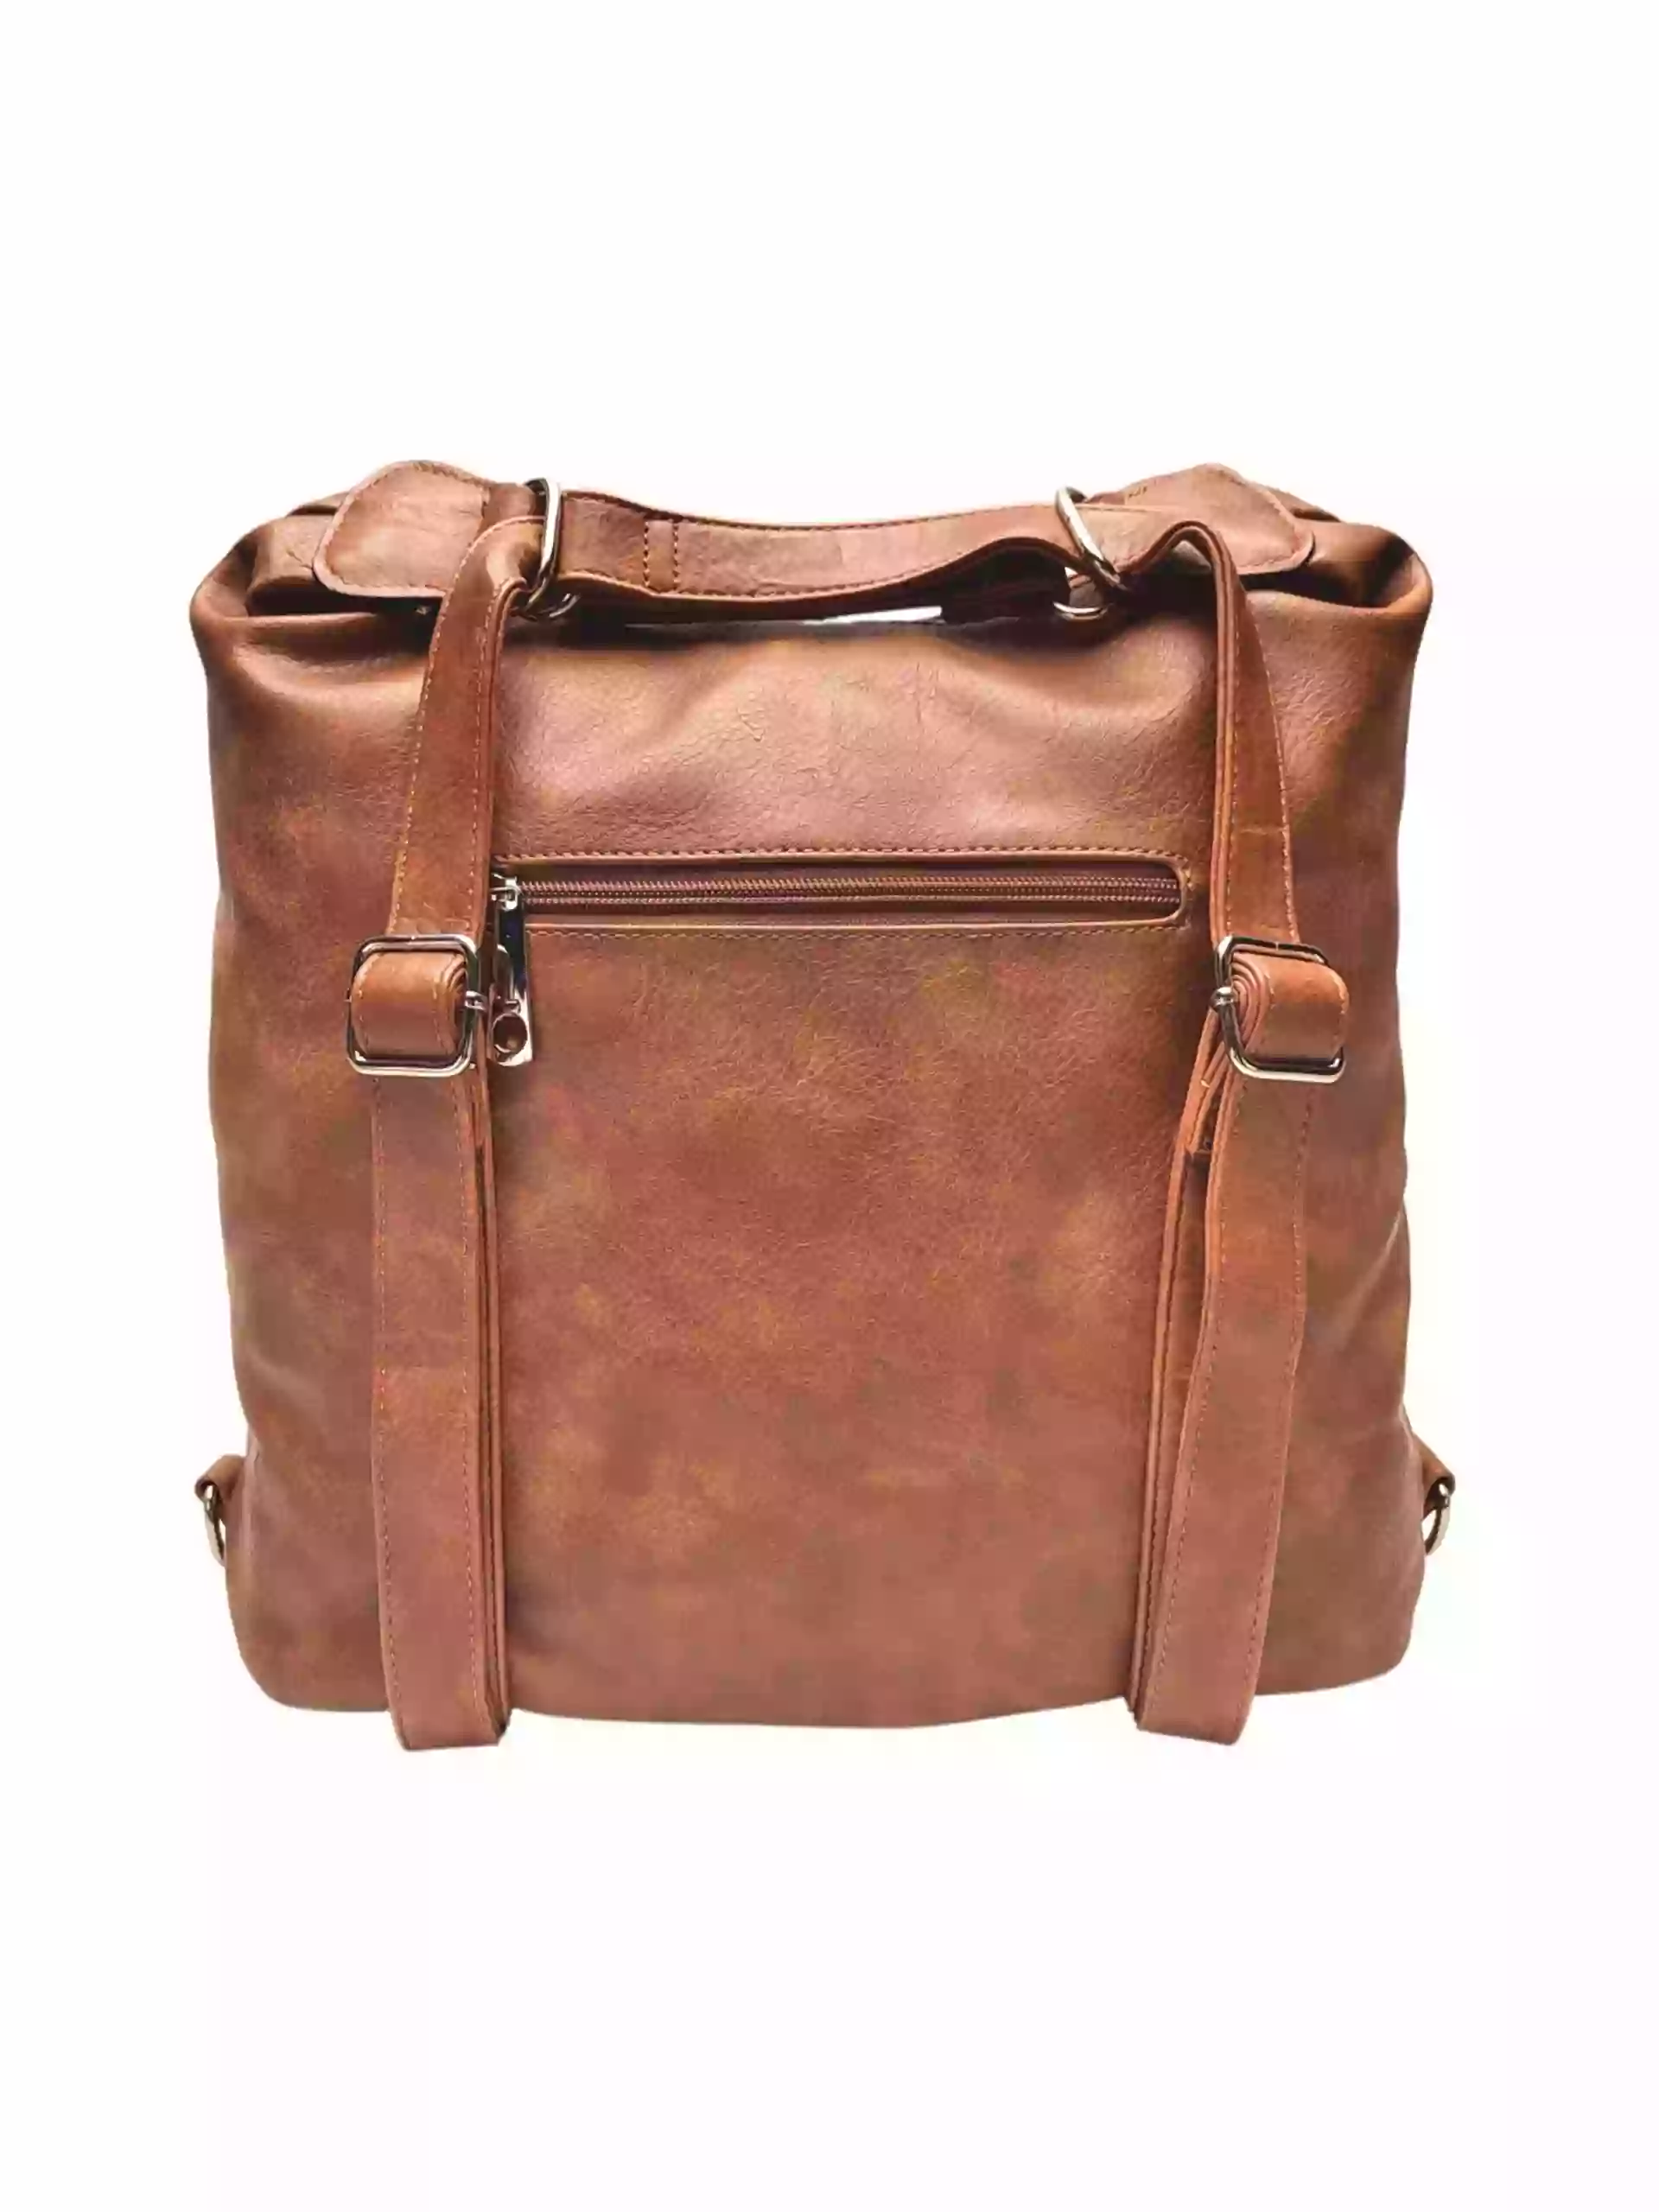 Velký středně hnědý kabelko-batoh z eko kůže, Tapple, H18077, zadní strana kabelko-batohu 2v1 s popruhy